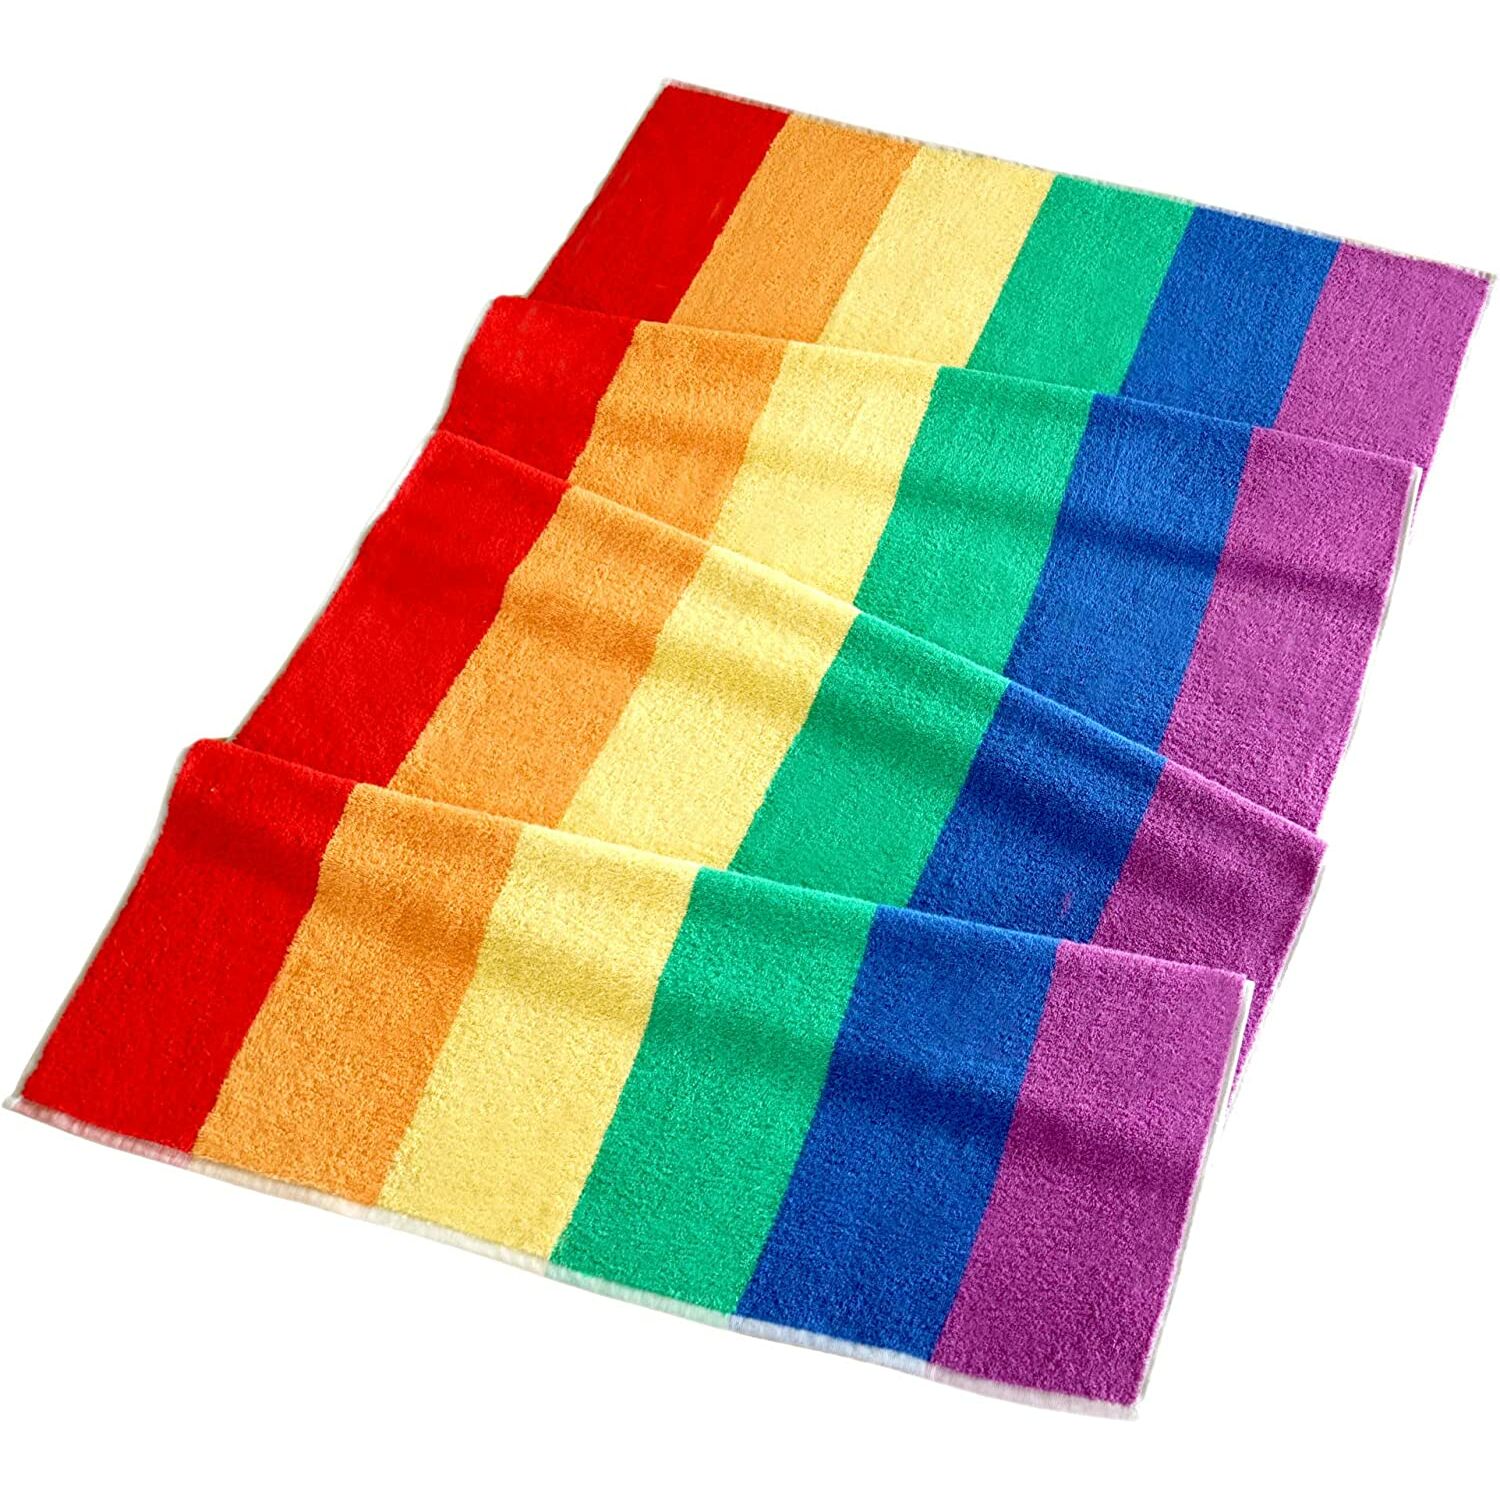 Handtücher :: Badetuch Buntes mit 90x180 Regenbogen cm, Strandtuch Frottee Handtuch Streifen, groß